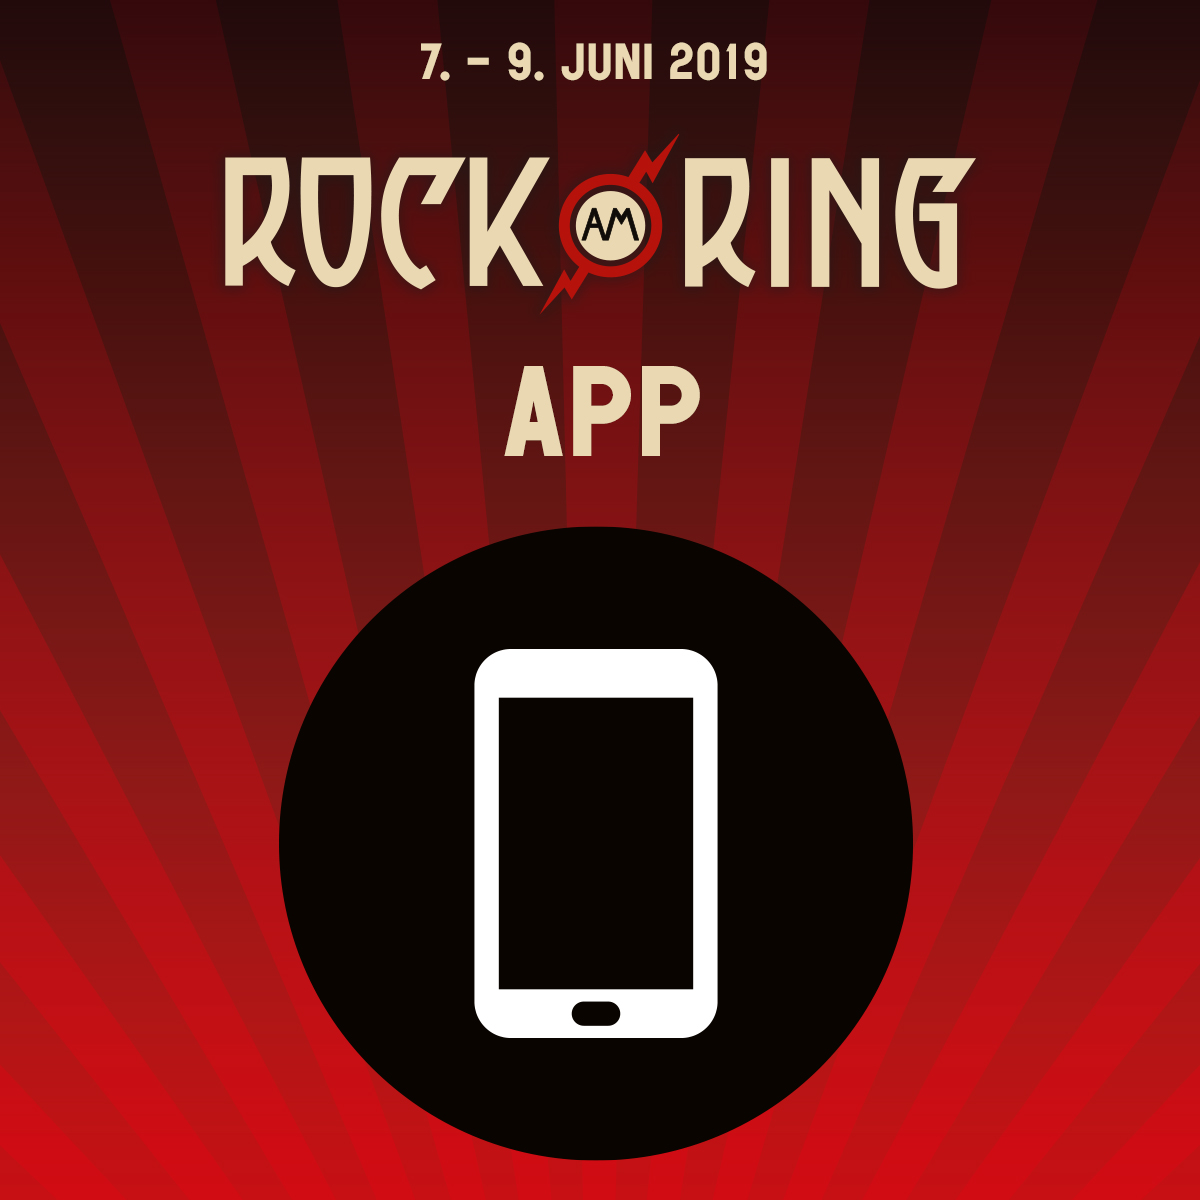 Rock am Ring App